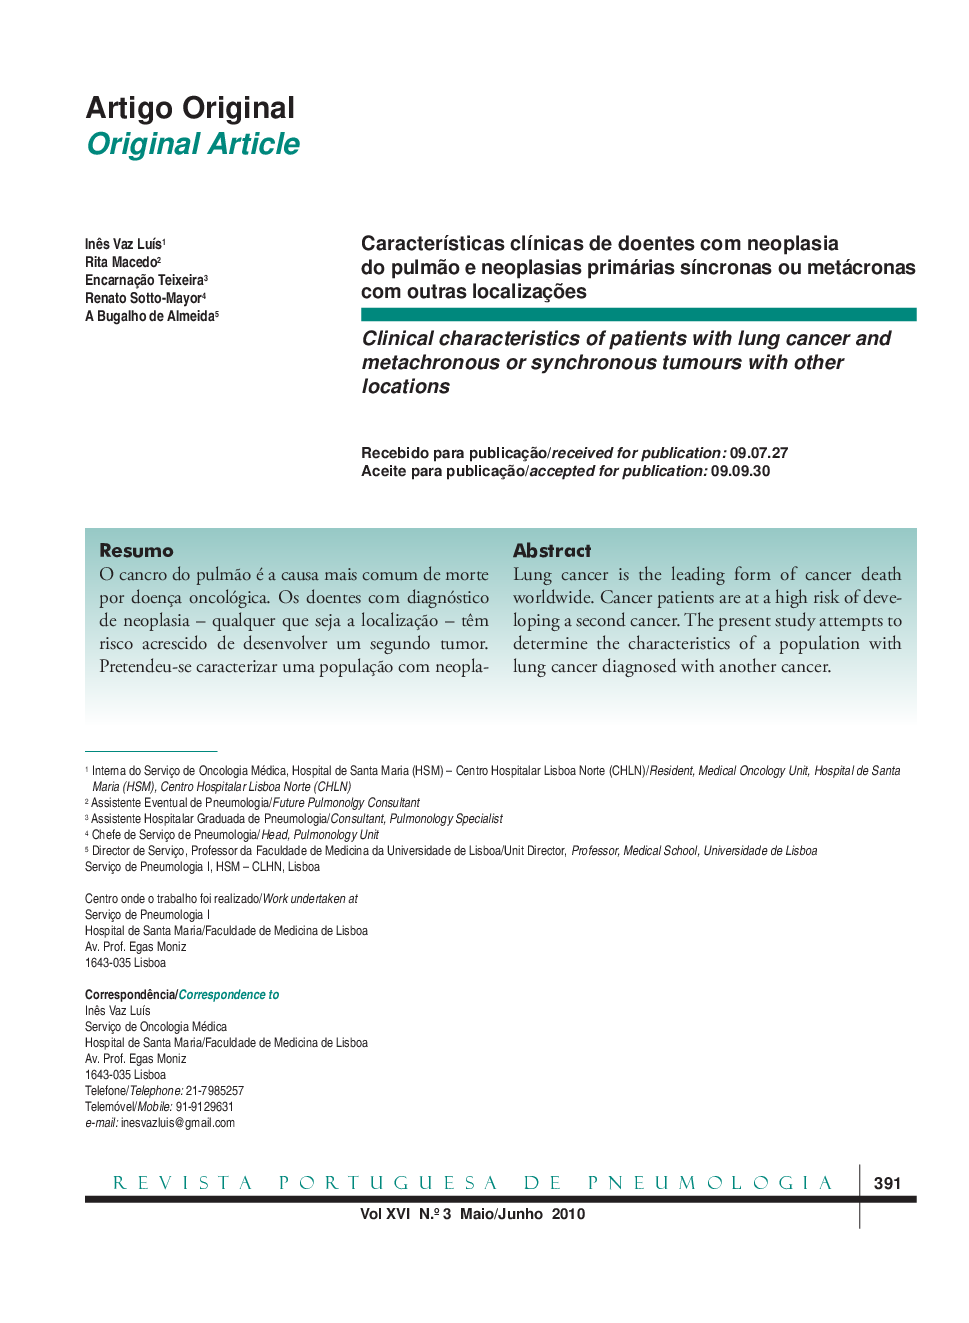 Características clínicas de doentes com neoplasia do pulmão e neoplasias primárias síncronas ou metácronas com outras localizações